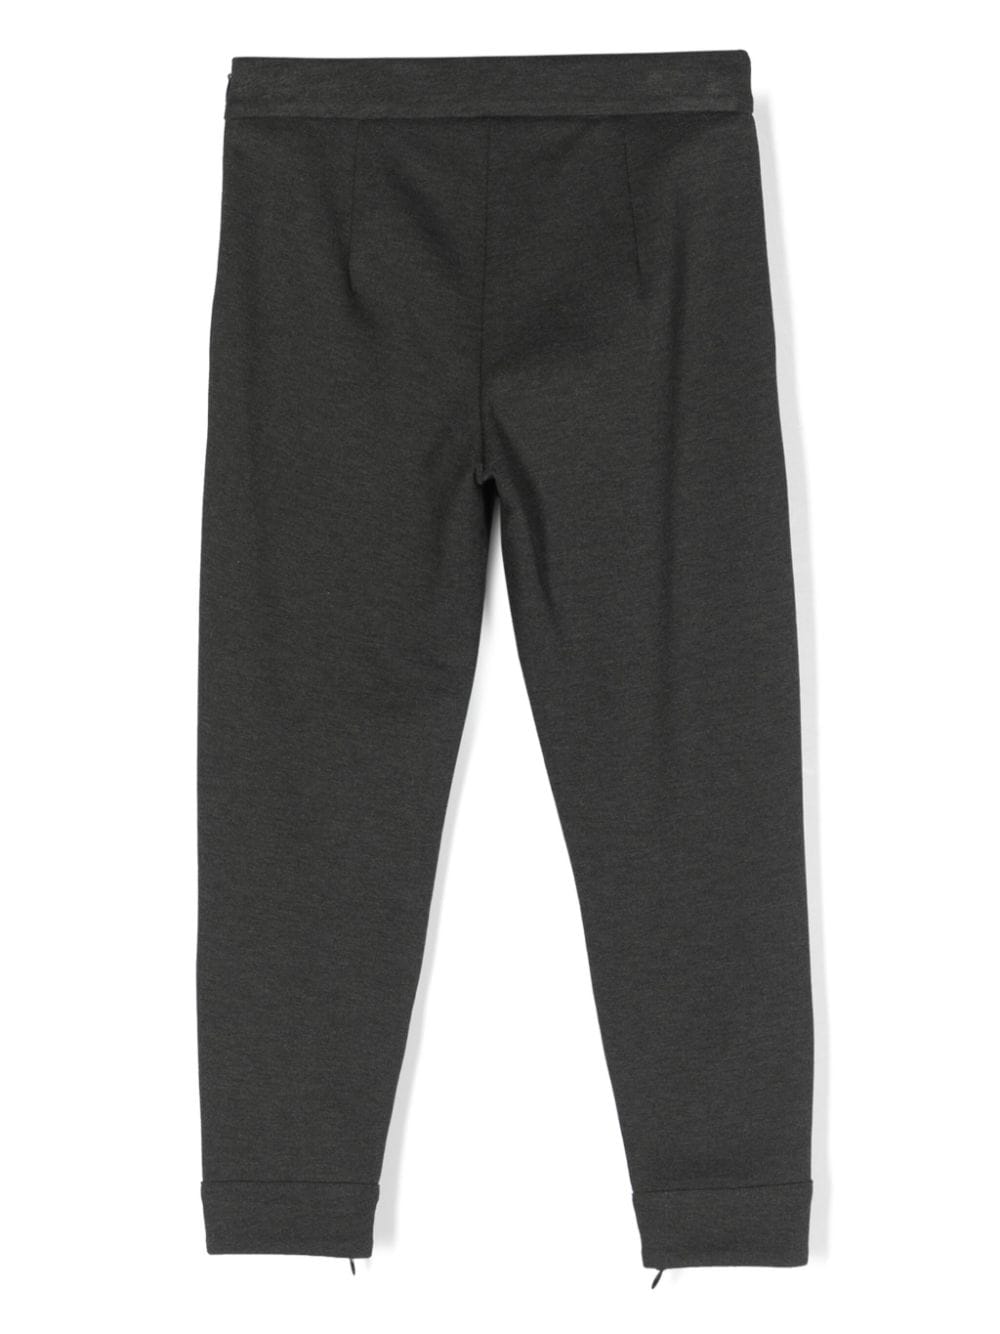 Pantalon gris pour fille, avec ouverture latérale à la cheville avec zip